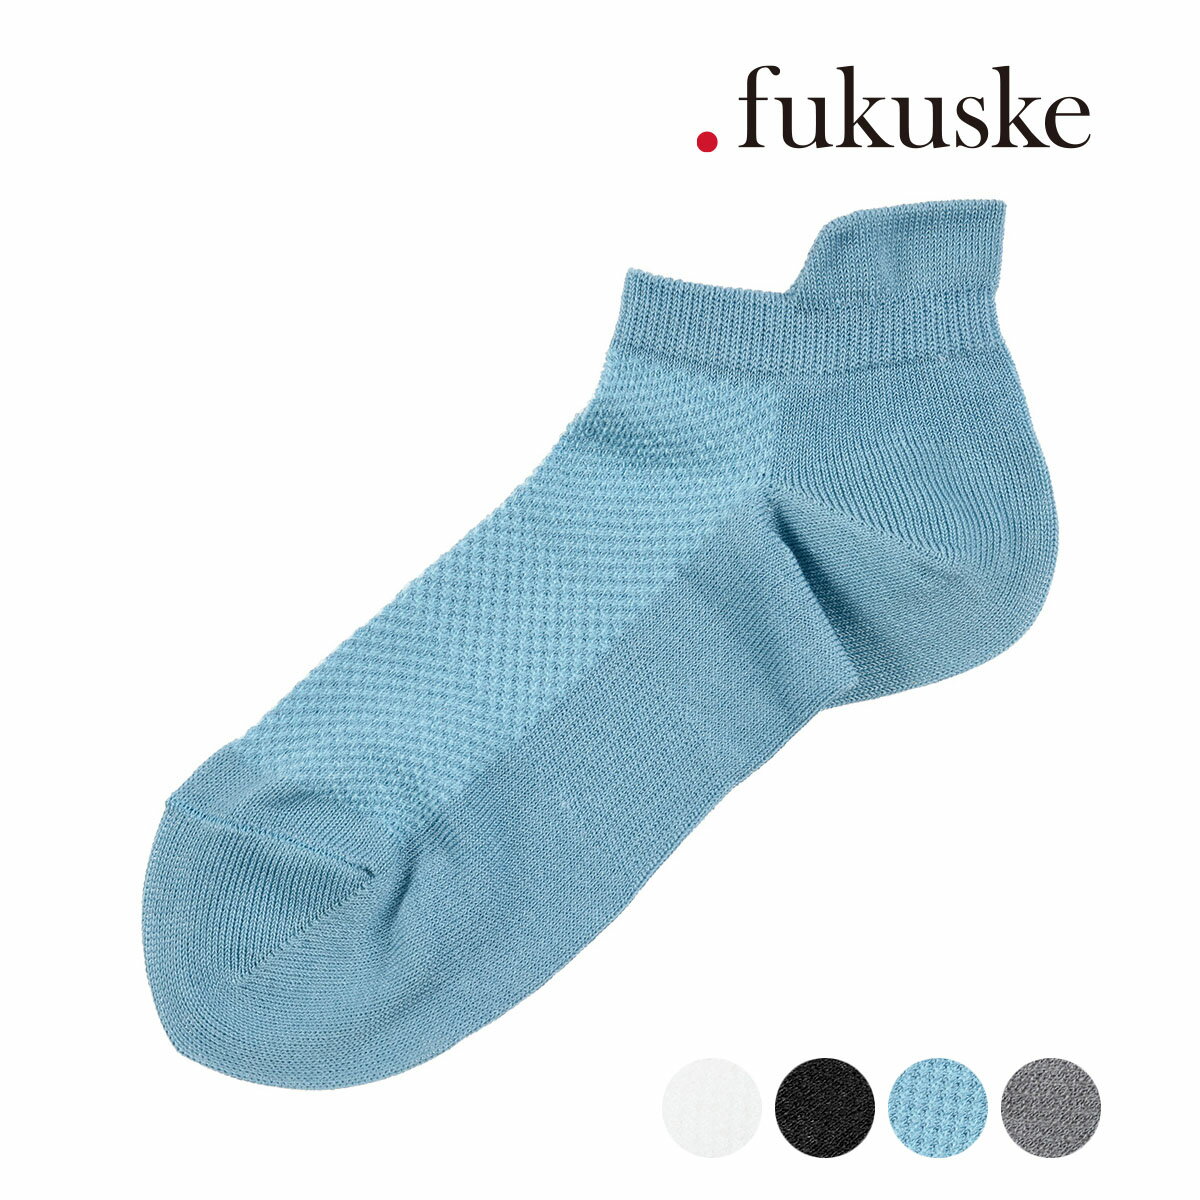 福助 靴下 レディース .fukuske(ドット福助) ： 甲メッシュ ソックス スニーカー丈 かかと上部分ベロ付き(3330-023) 婦人 女性 レディース 靴下 フクスケ fukuske 福助 公式